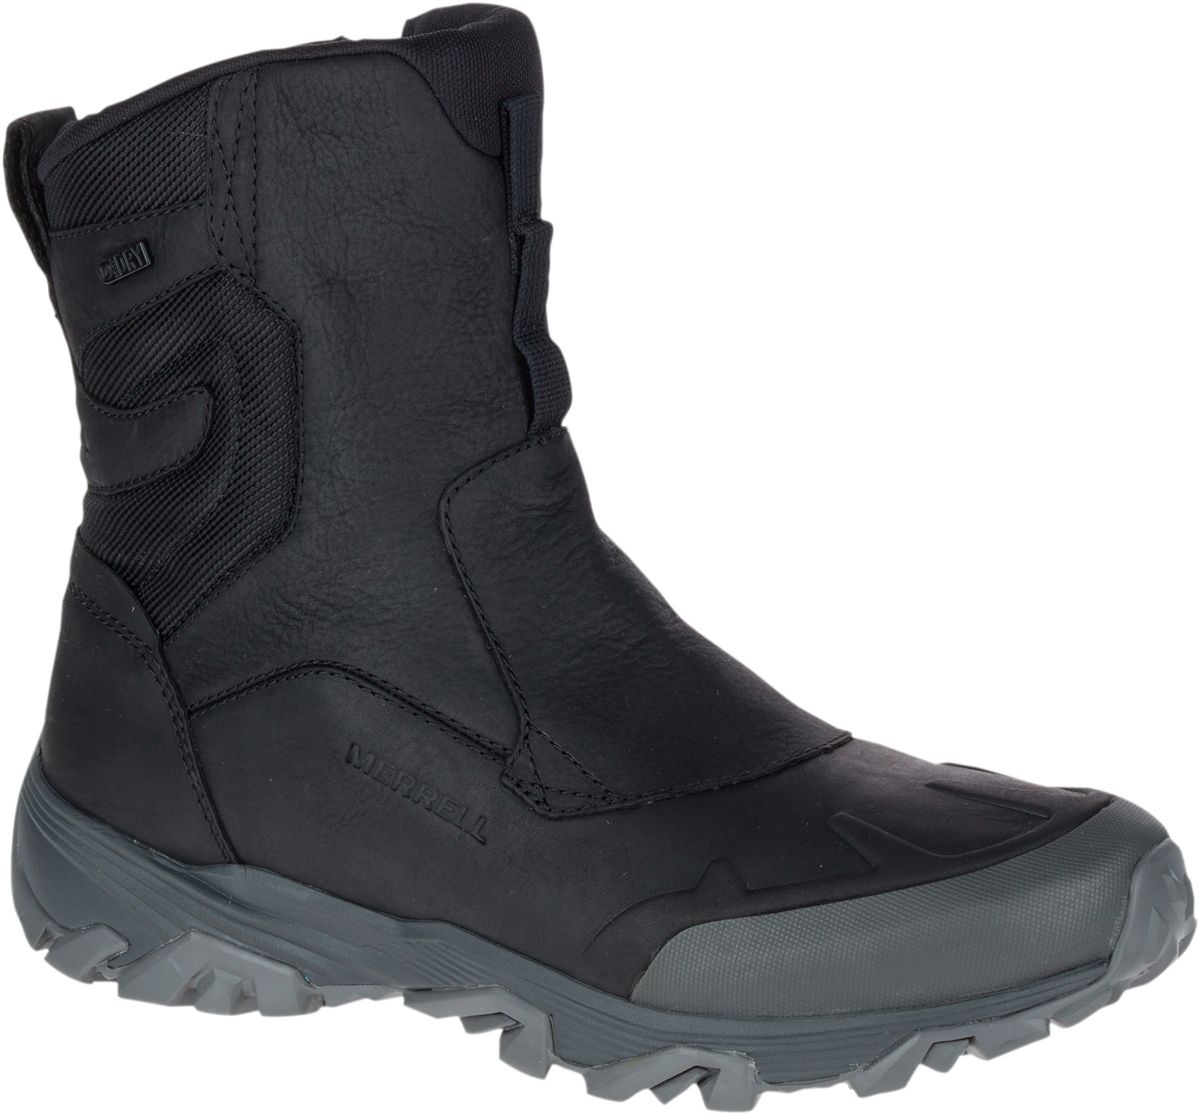 mens boots waterproof winter